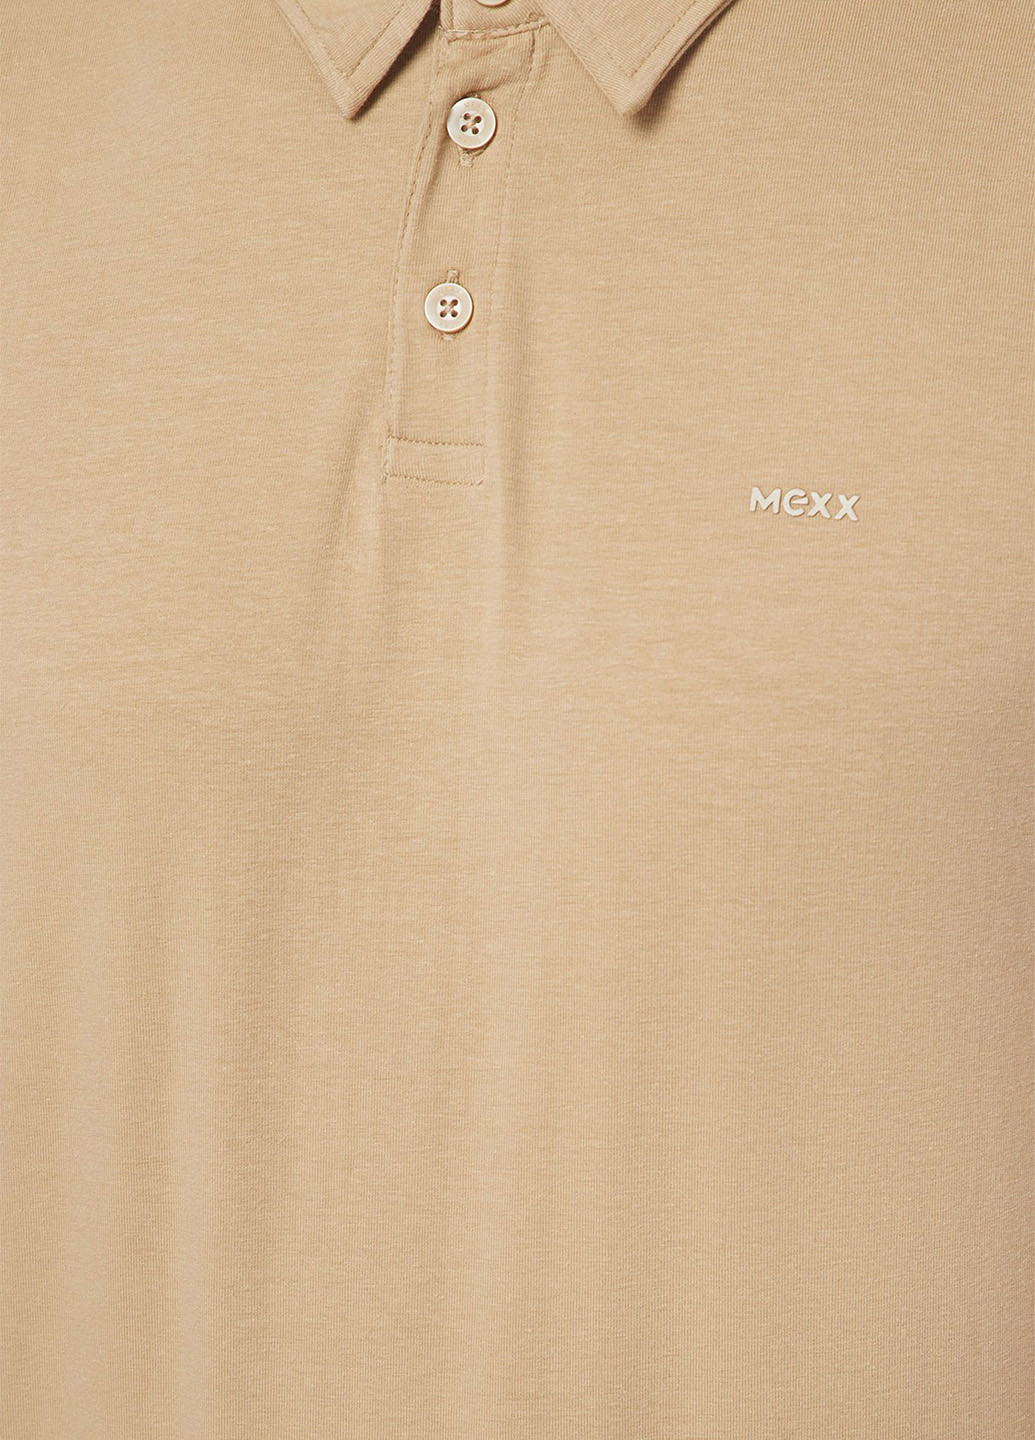 Бежевая футболка-поло для мужчин Mexx с логотипом